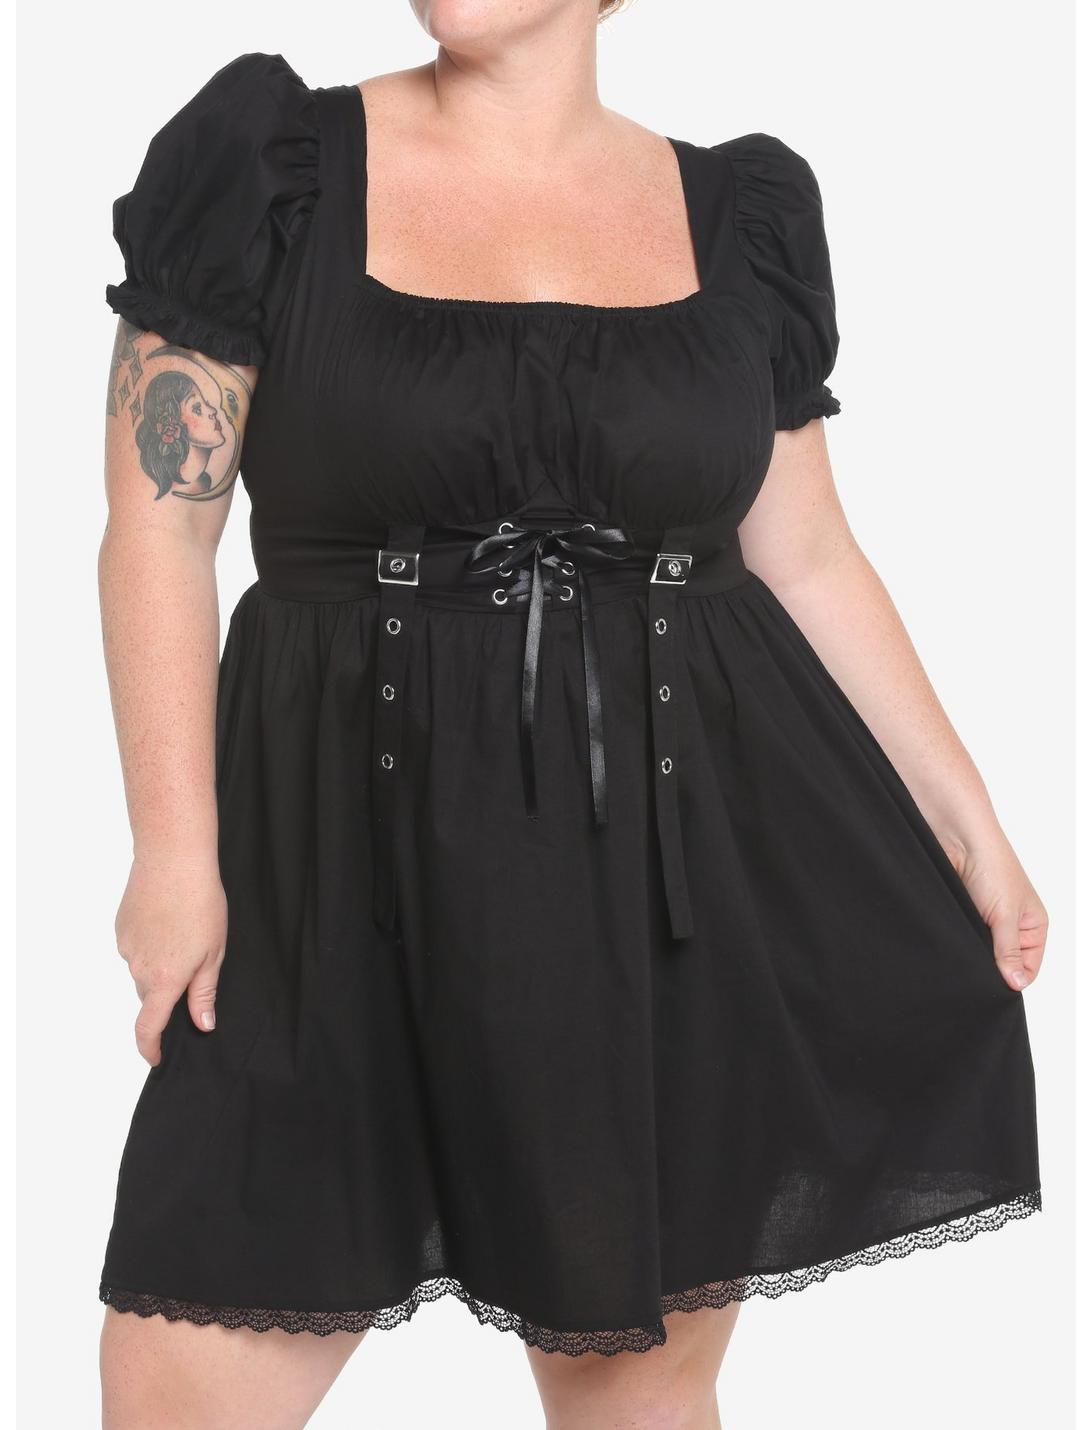 Black Corset Grommet Dress Plus Size, BLACK, hi-res